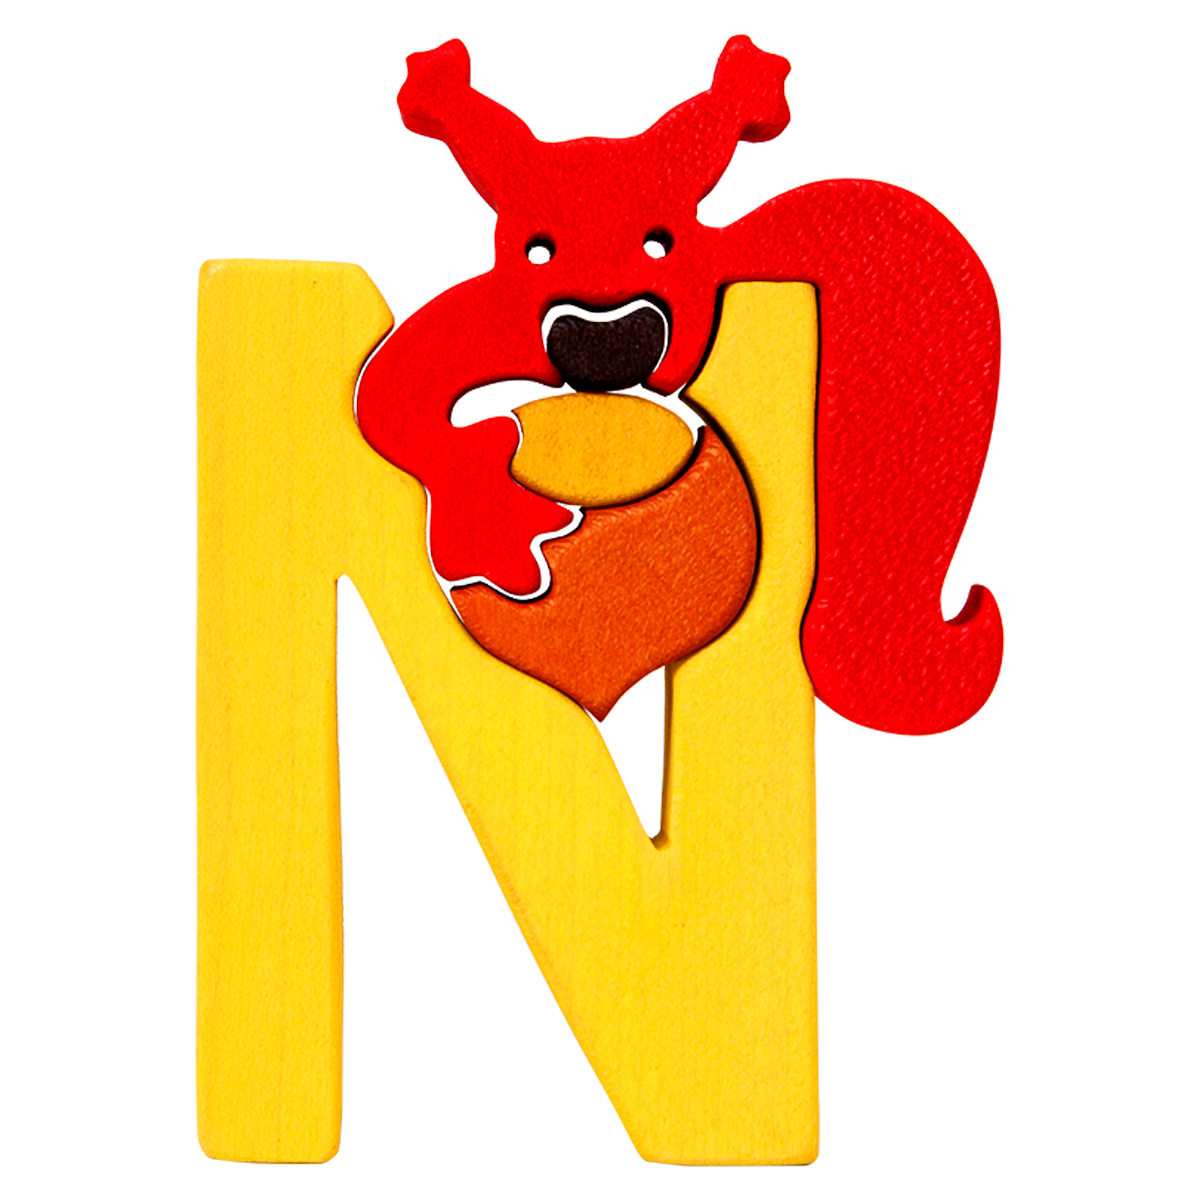 N - nut